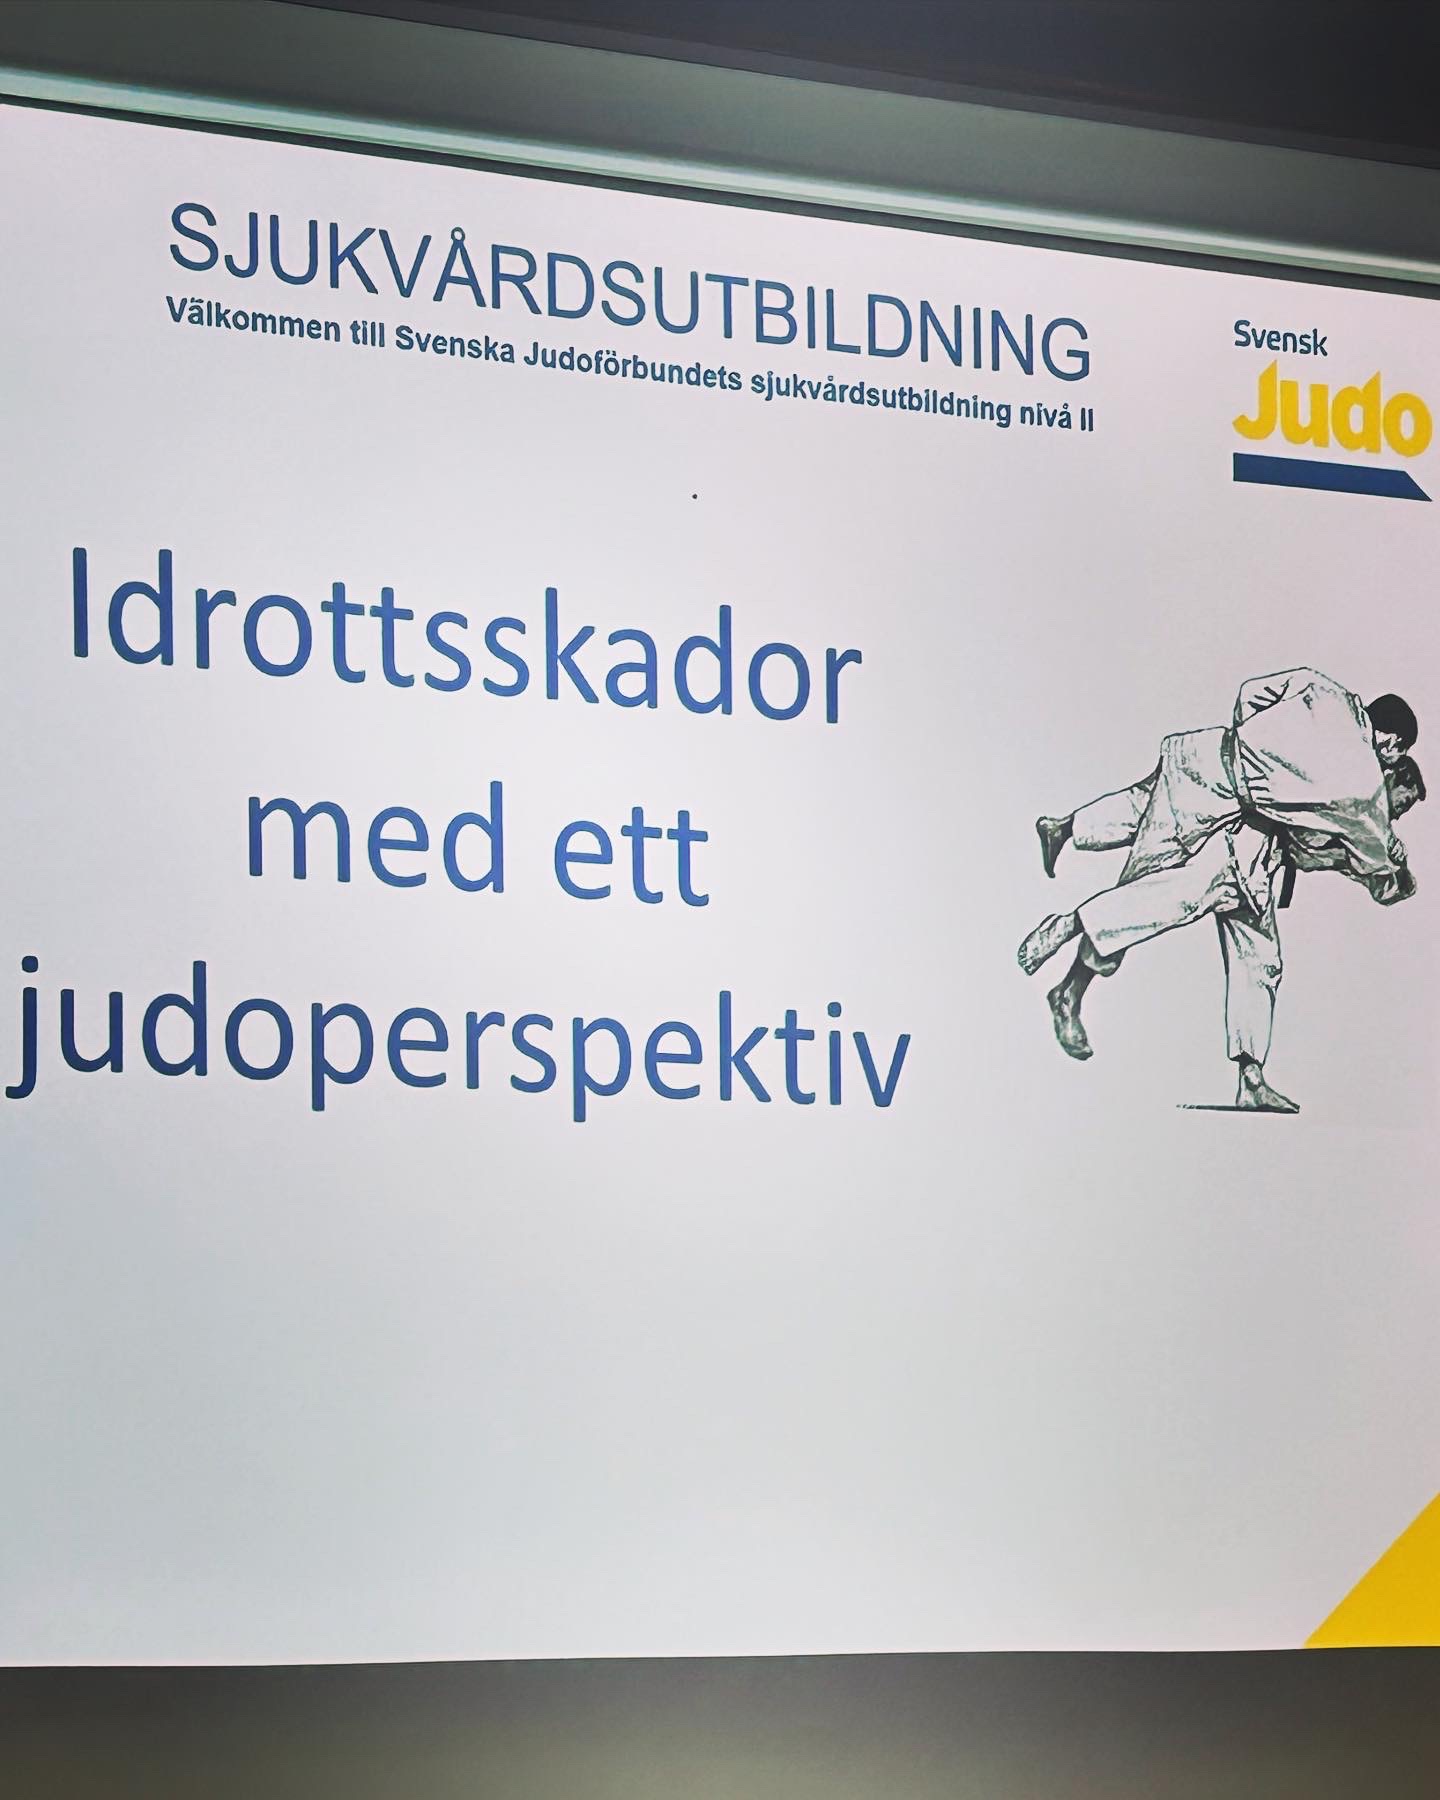 Featured image for “Kristian är nu utbildad i JudoSjukvård, nivå 2!”